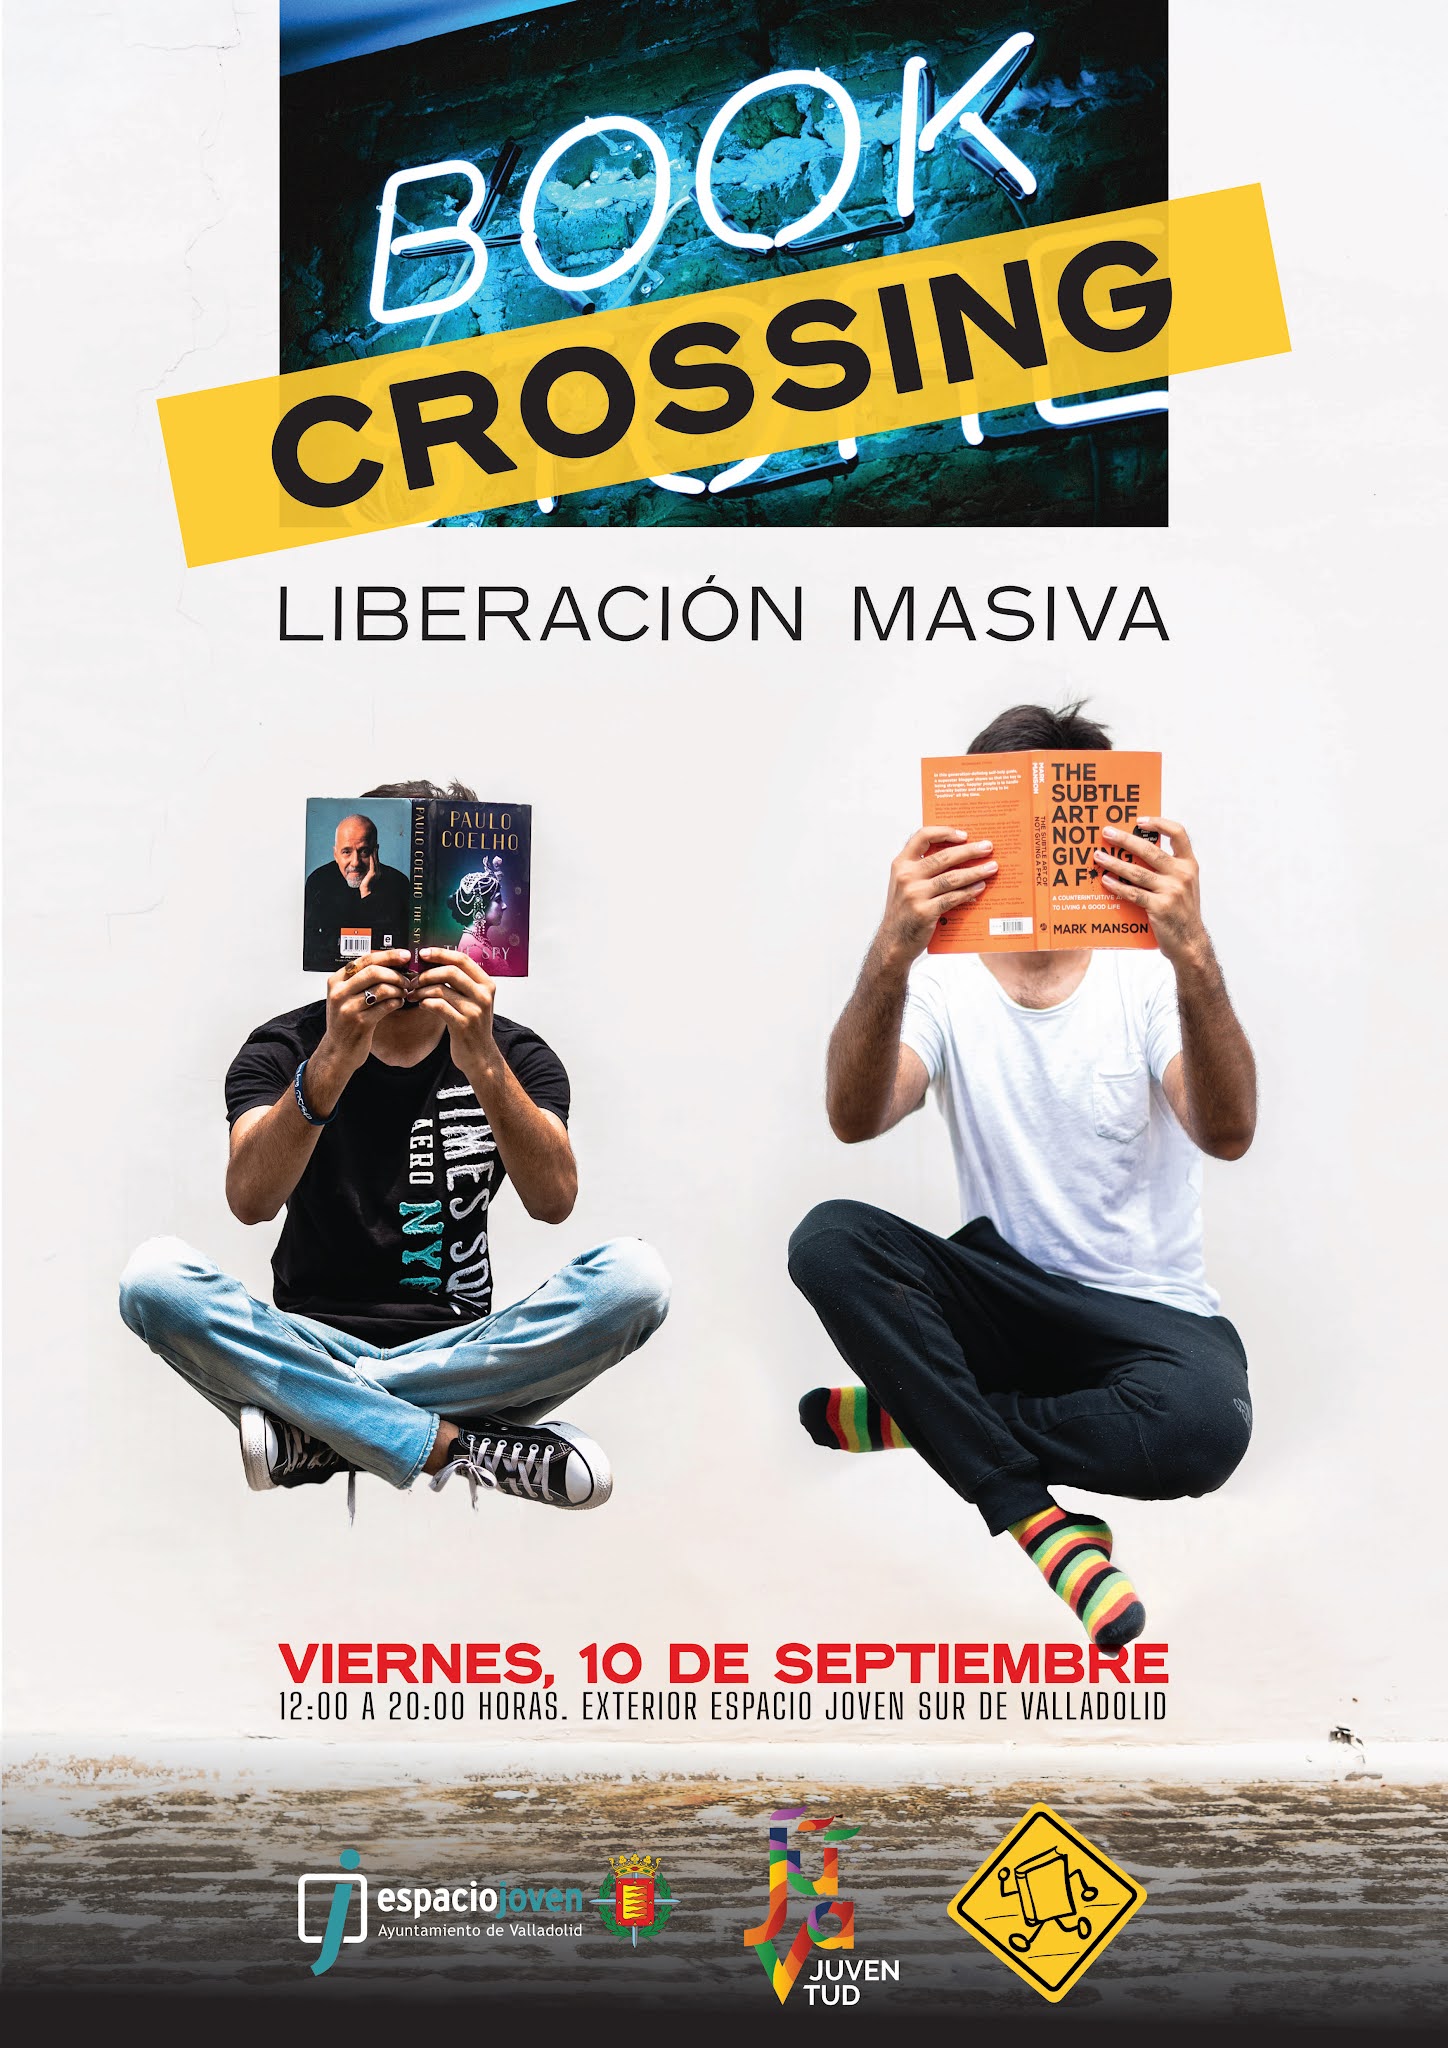 Liberación masiva de libros #BookCrossing en el Espacio Joven Sur de Valladolid. 10.09.2021